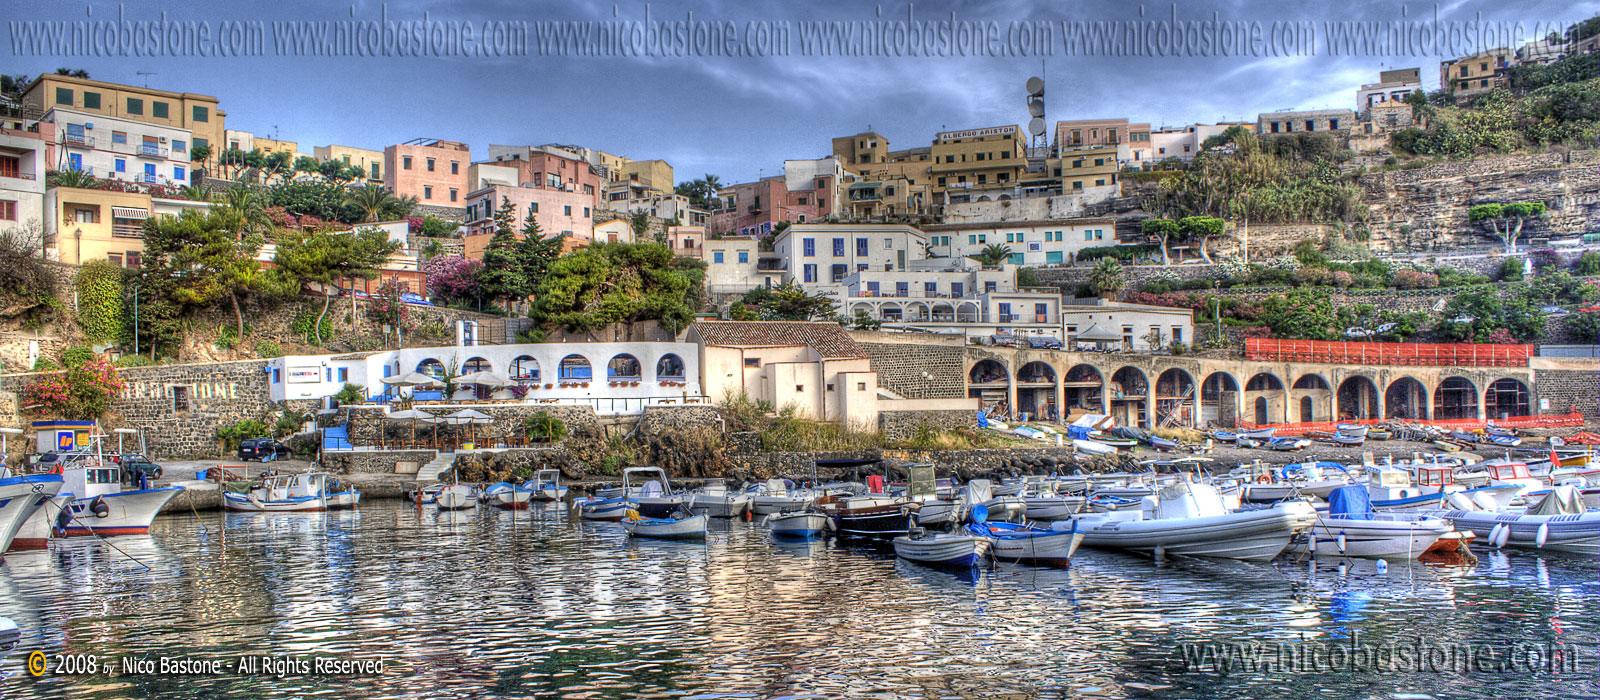 Ustica PA "il porticciolo - the little harbour" - Elaborazione grafica in HDR, High Dynamic Range